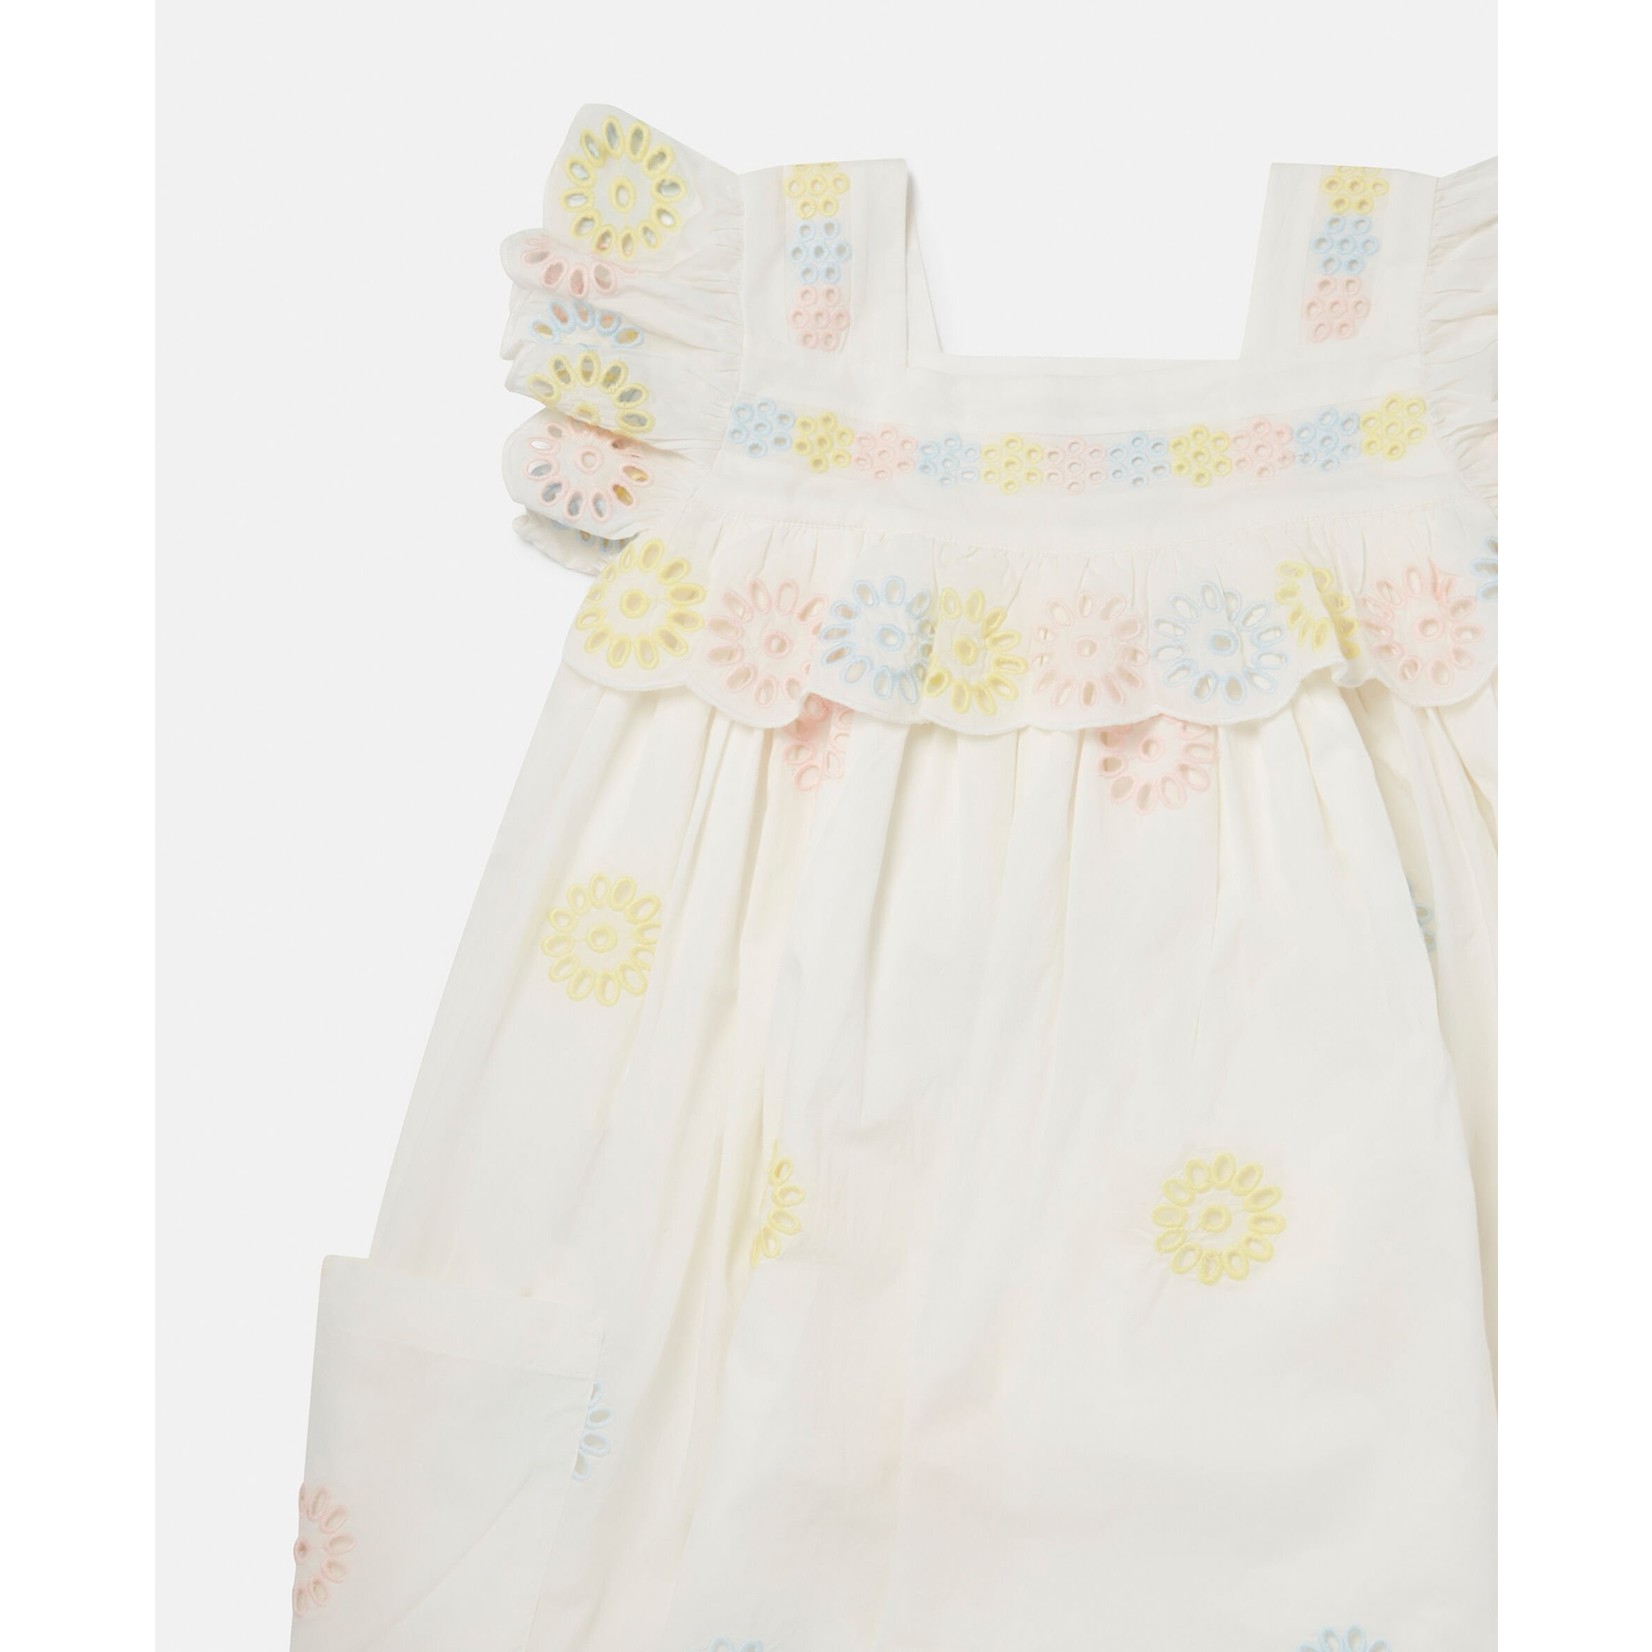 فستان مزين بالزهور من الكروشيه من ستيلا مكارتني